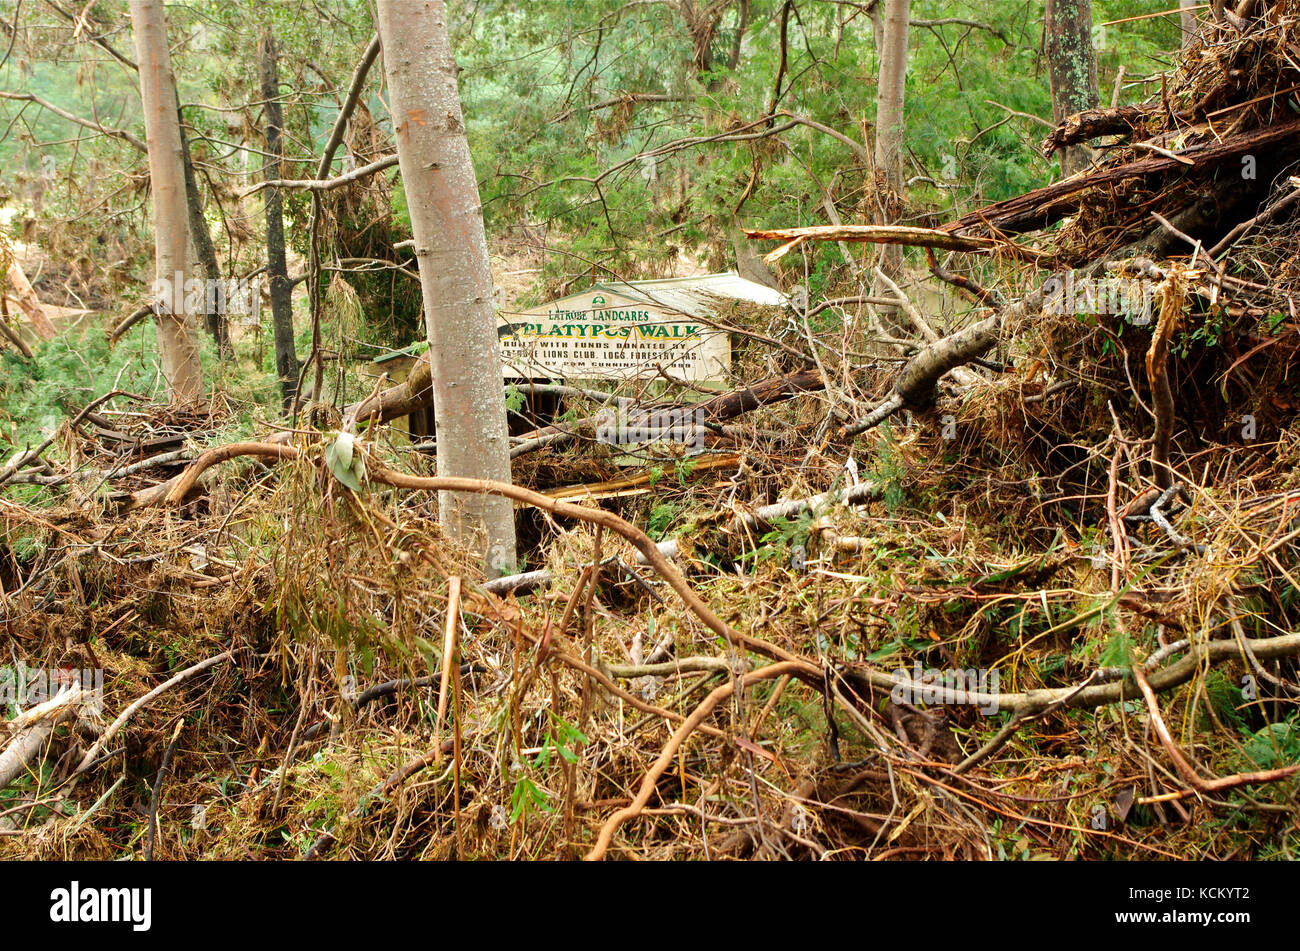 Auf dem beschädigten Platypus Walk am Ufer des Mersey River stapelten sich Hochwasserrückstände. Warrawee Forest Reserve, Latrobe, nordwestlicher Tasmanien, Australien Stockfoto